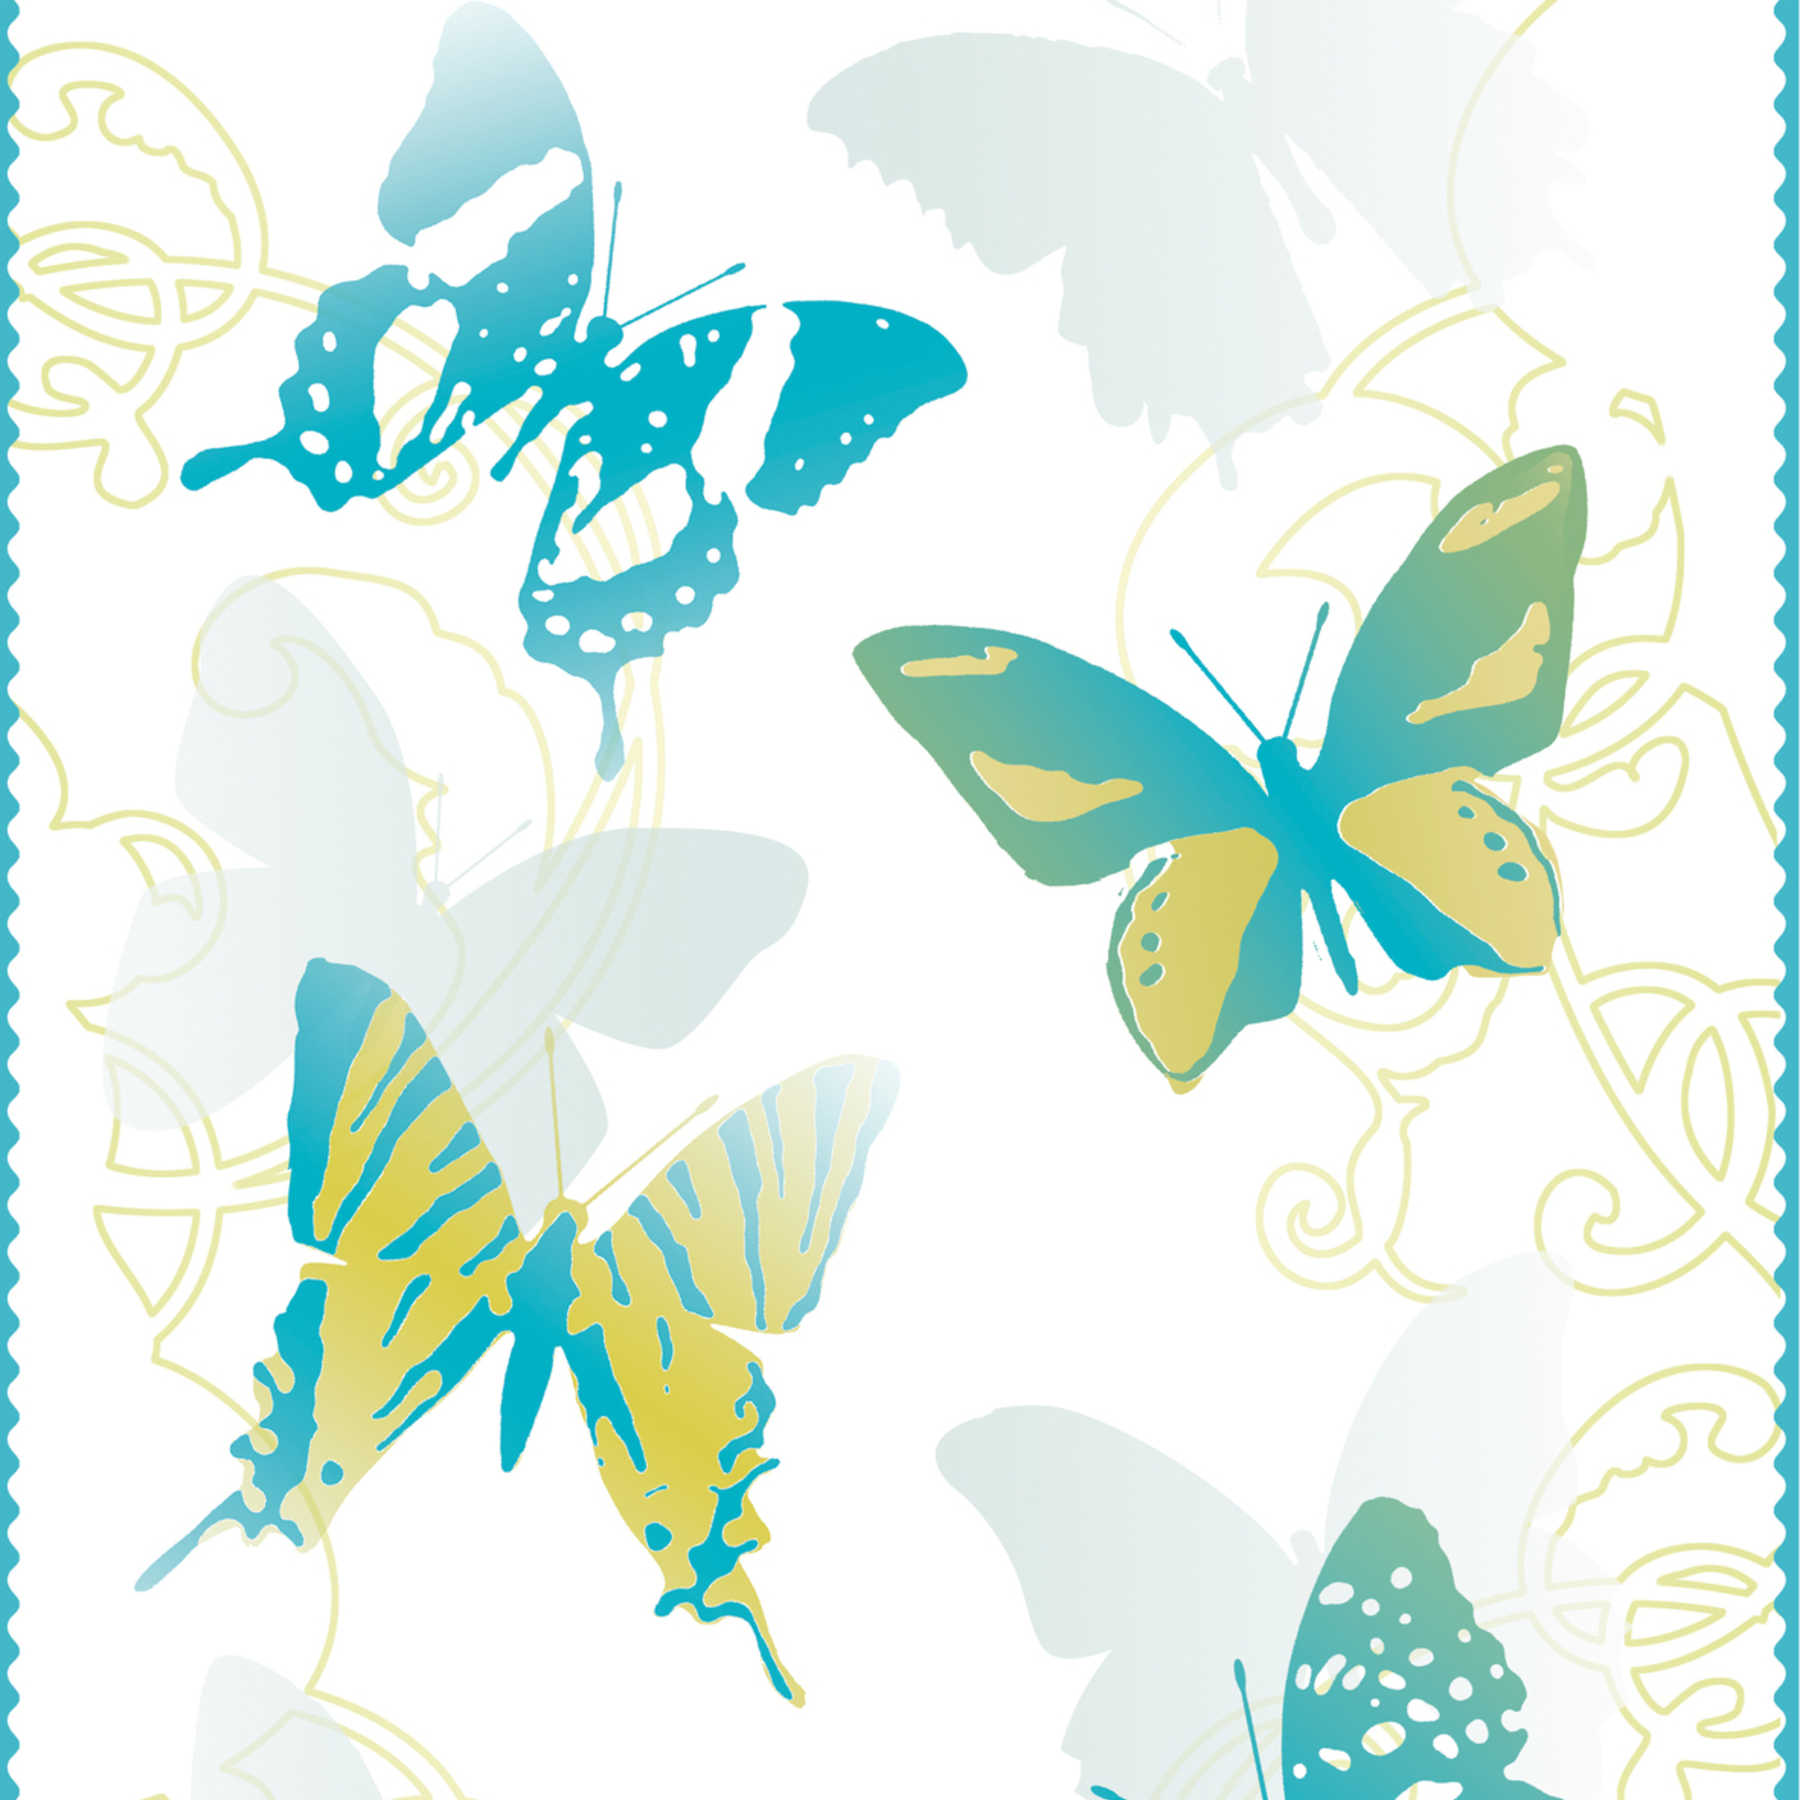             Vlinder behang voor kinderkamer - blauw, geel, wit
        